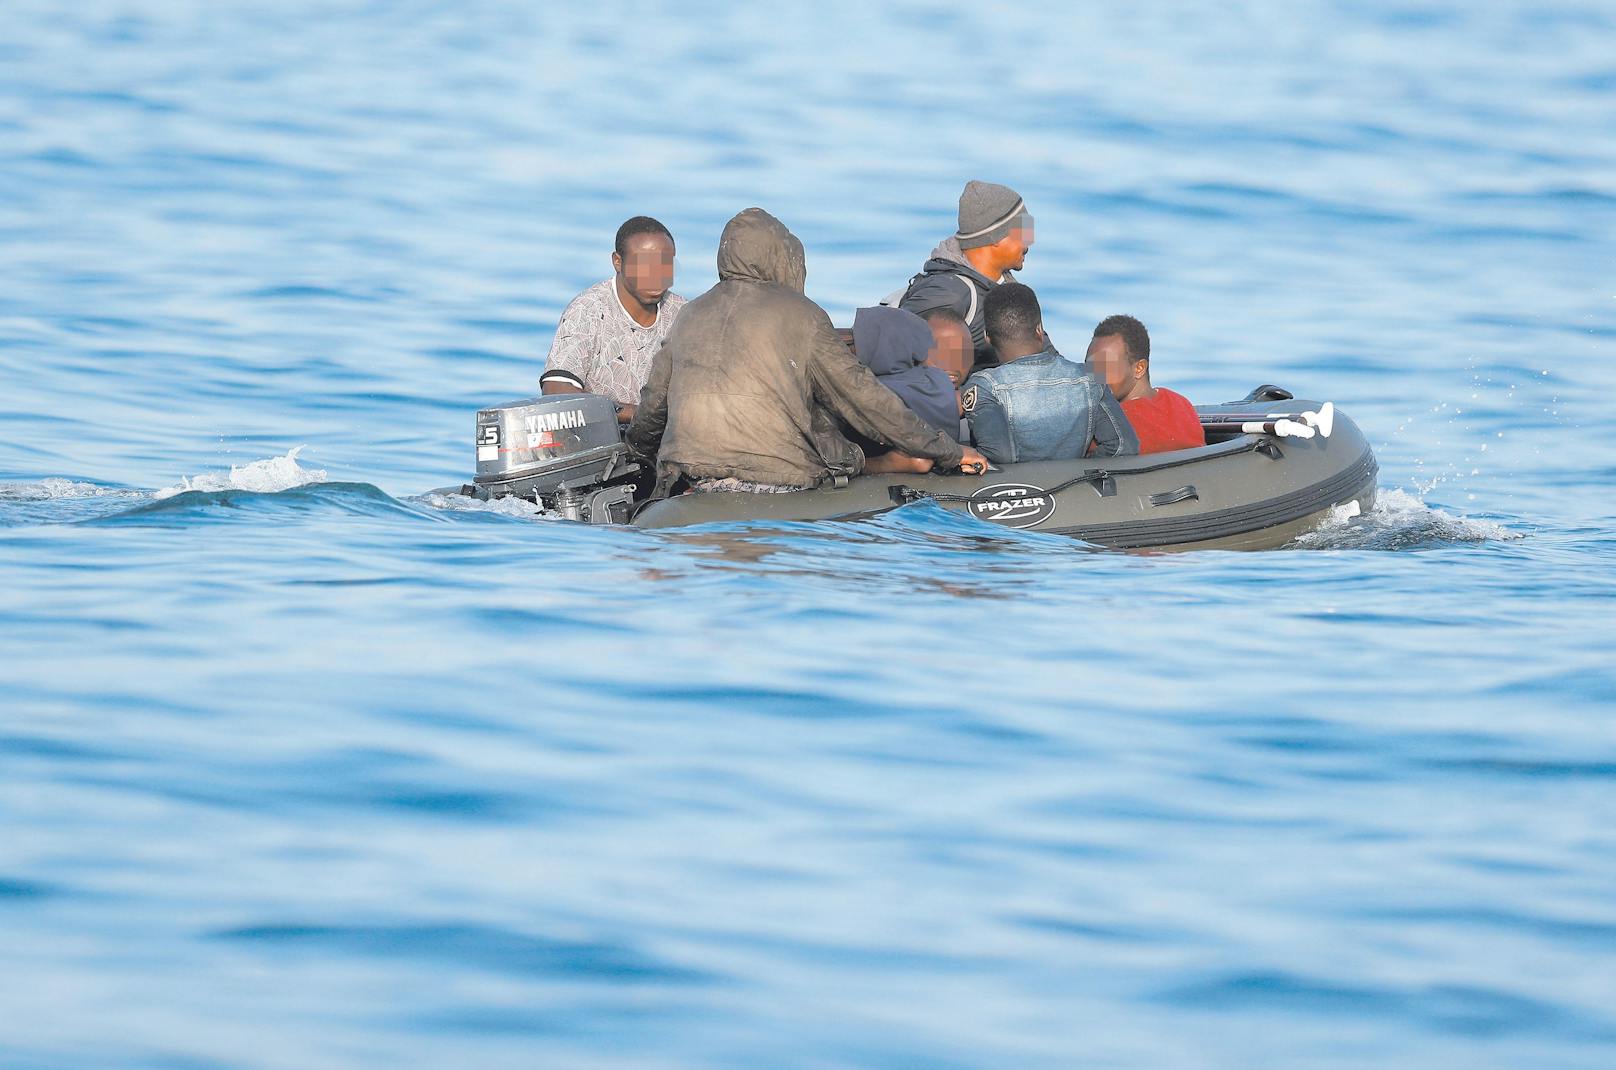 Wer mit dem Schlauchboot kommt, erhält kein Asyl mehr